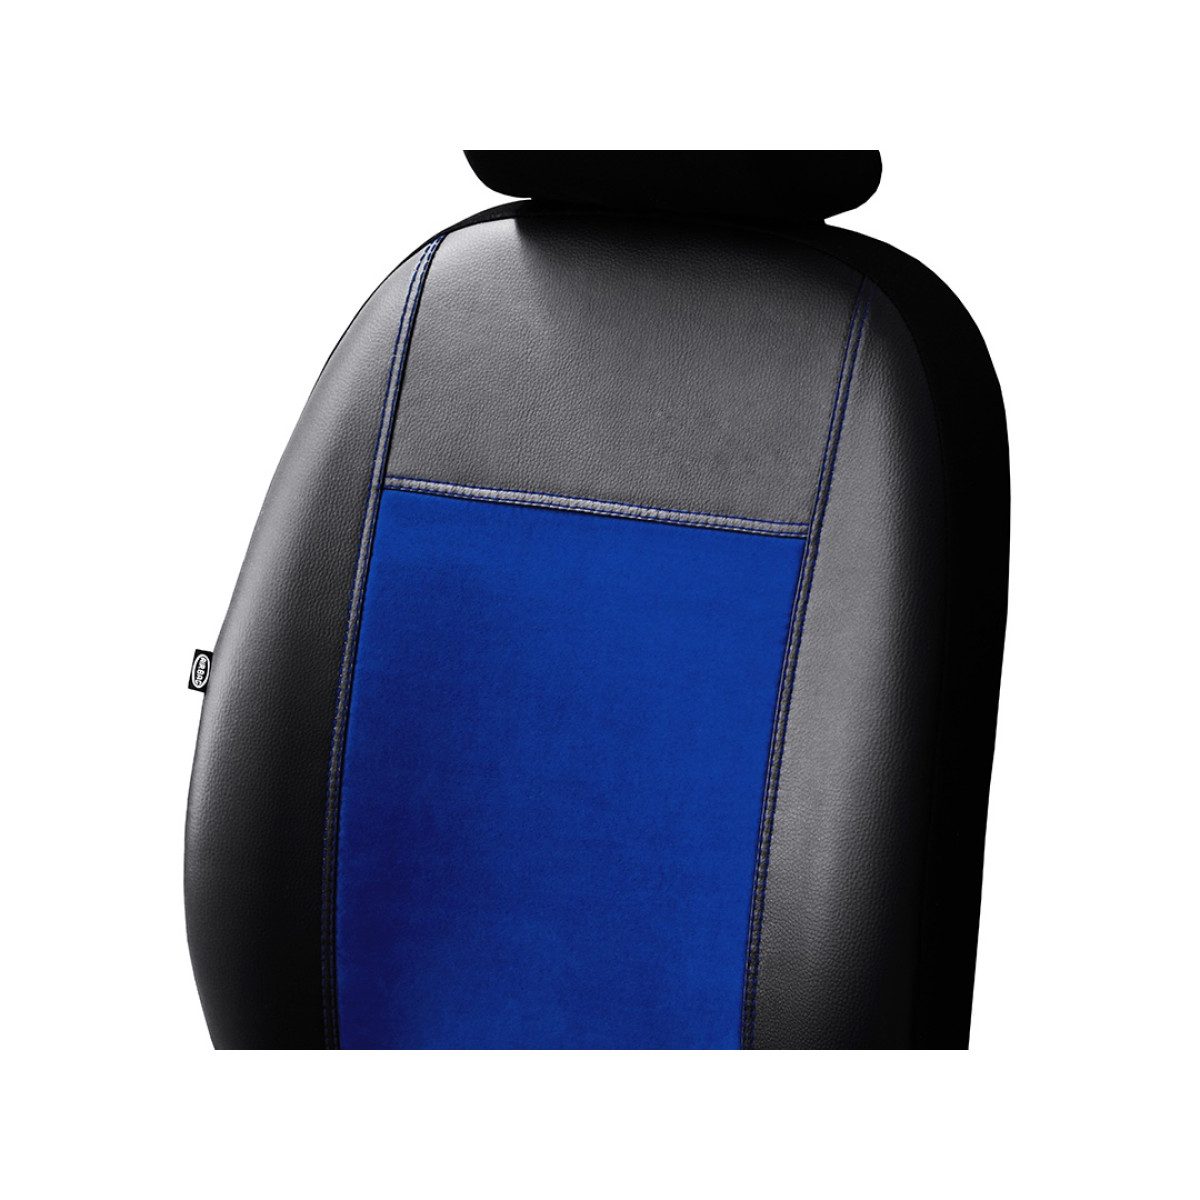 Auto Accessori Lupex - Sitzbezüge für Autositz, kompatibel Autositzbezüge  für Smart Fortwo Zweite Serie, Weiß Schwarz | 453 | Made in Italy 